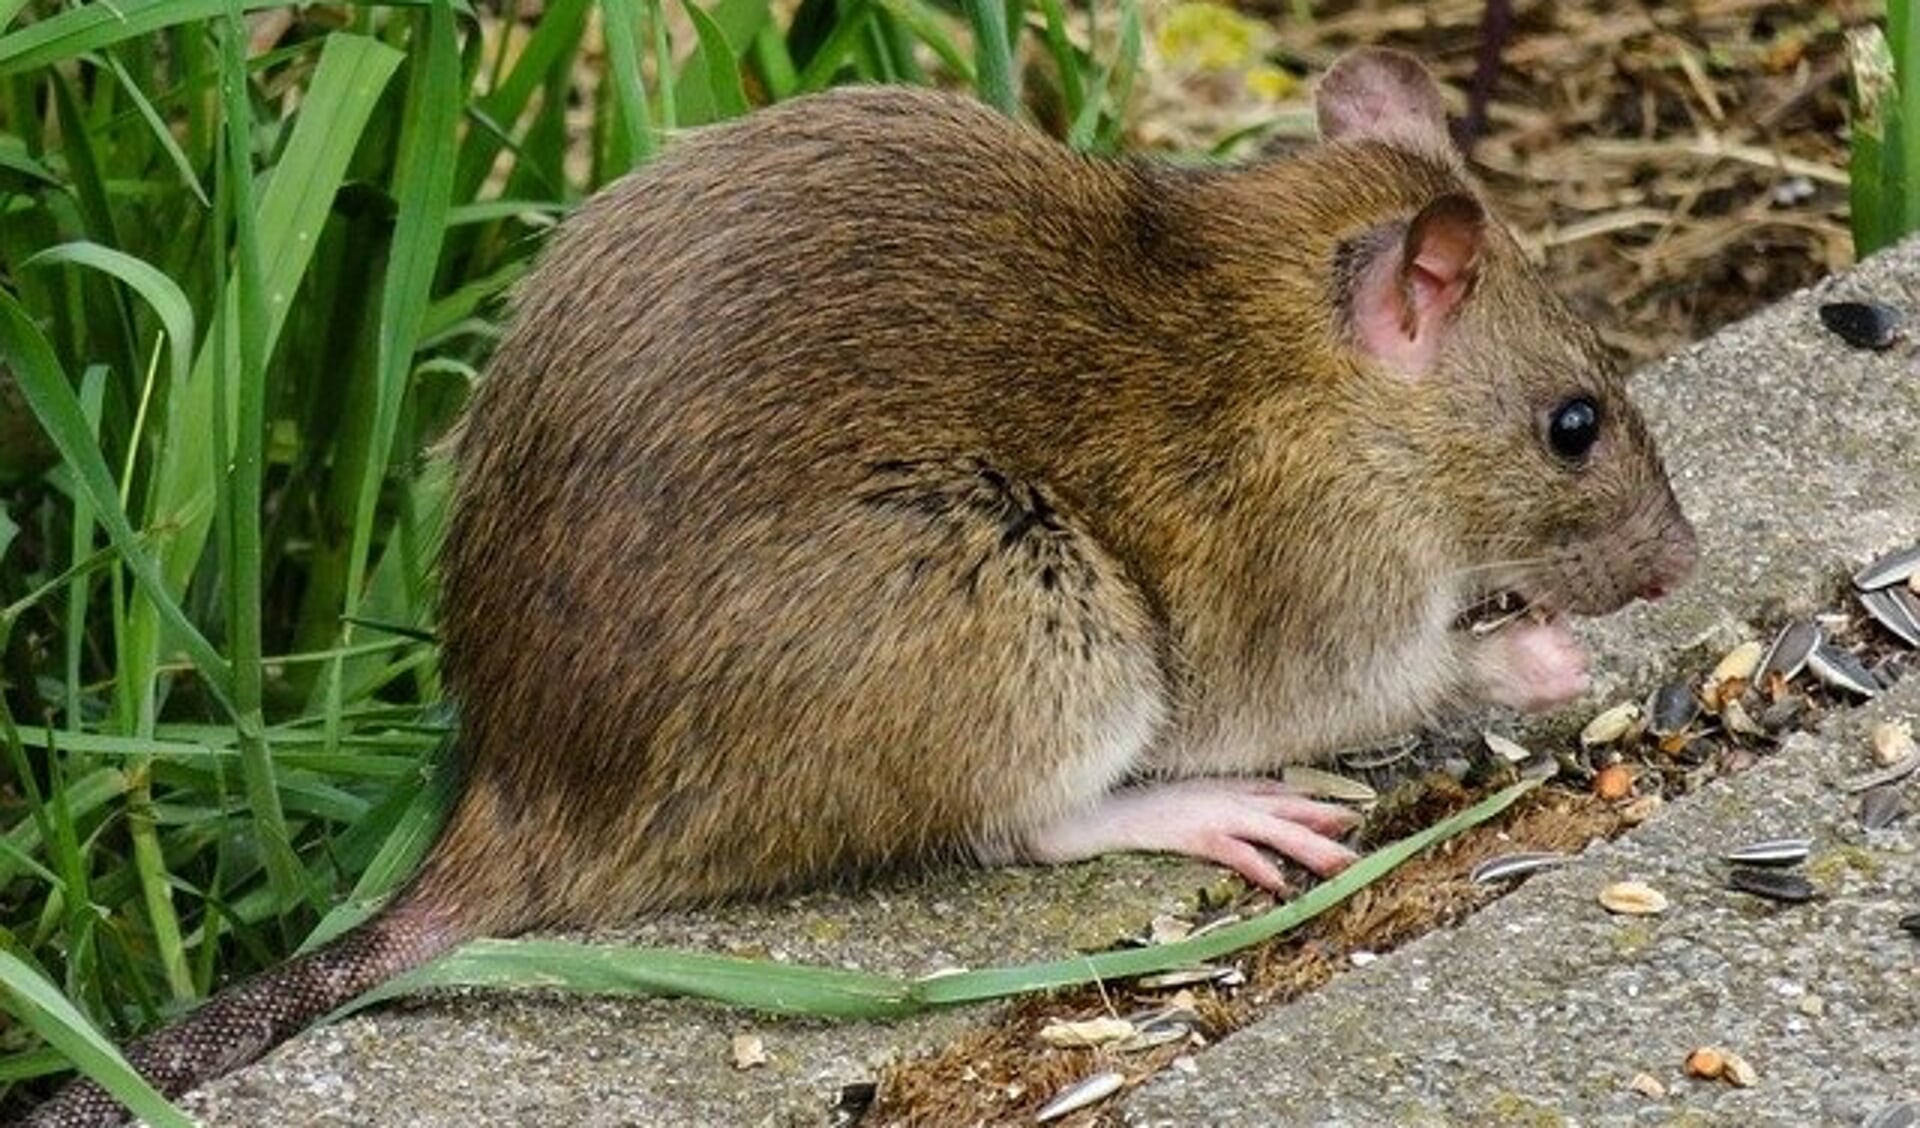 Aanwezige rattenpopulaties kunnen worden verkleind, maar helemaal verdwijnen uit de openbare ruimte en tuinen zullen ze niet.